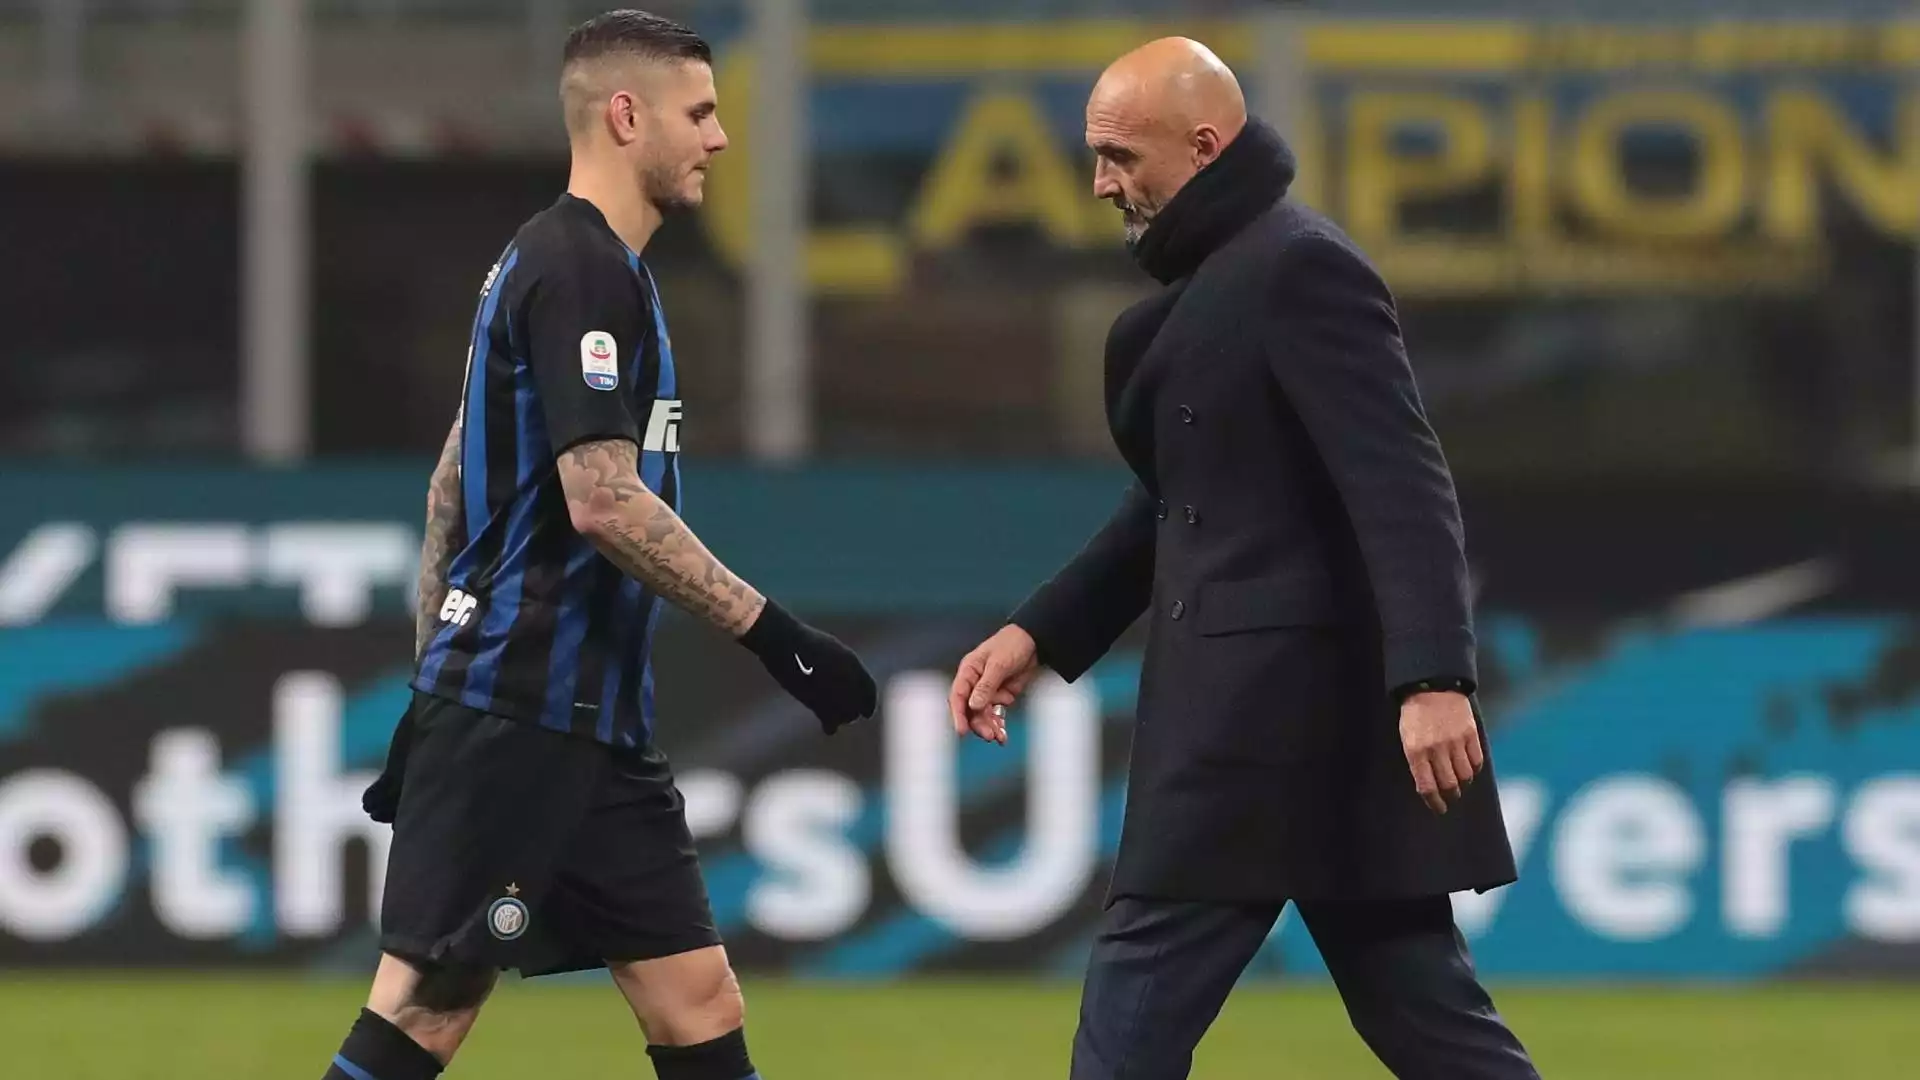 Nel febbraio 2019 l'Inter gli toglie la fascia da capitano. Il rapporto con mister Spalletti e la società è ormai alle corde